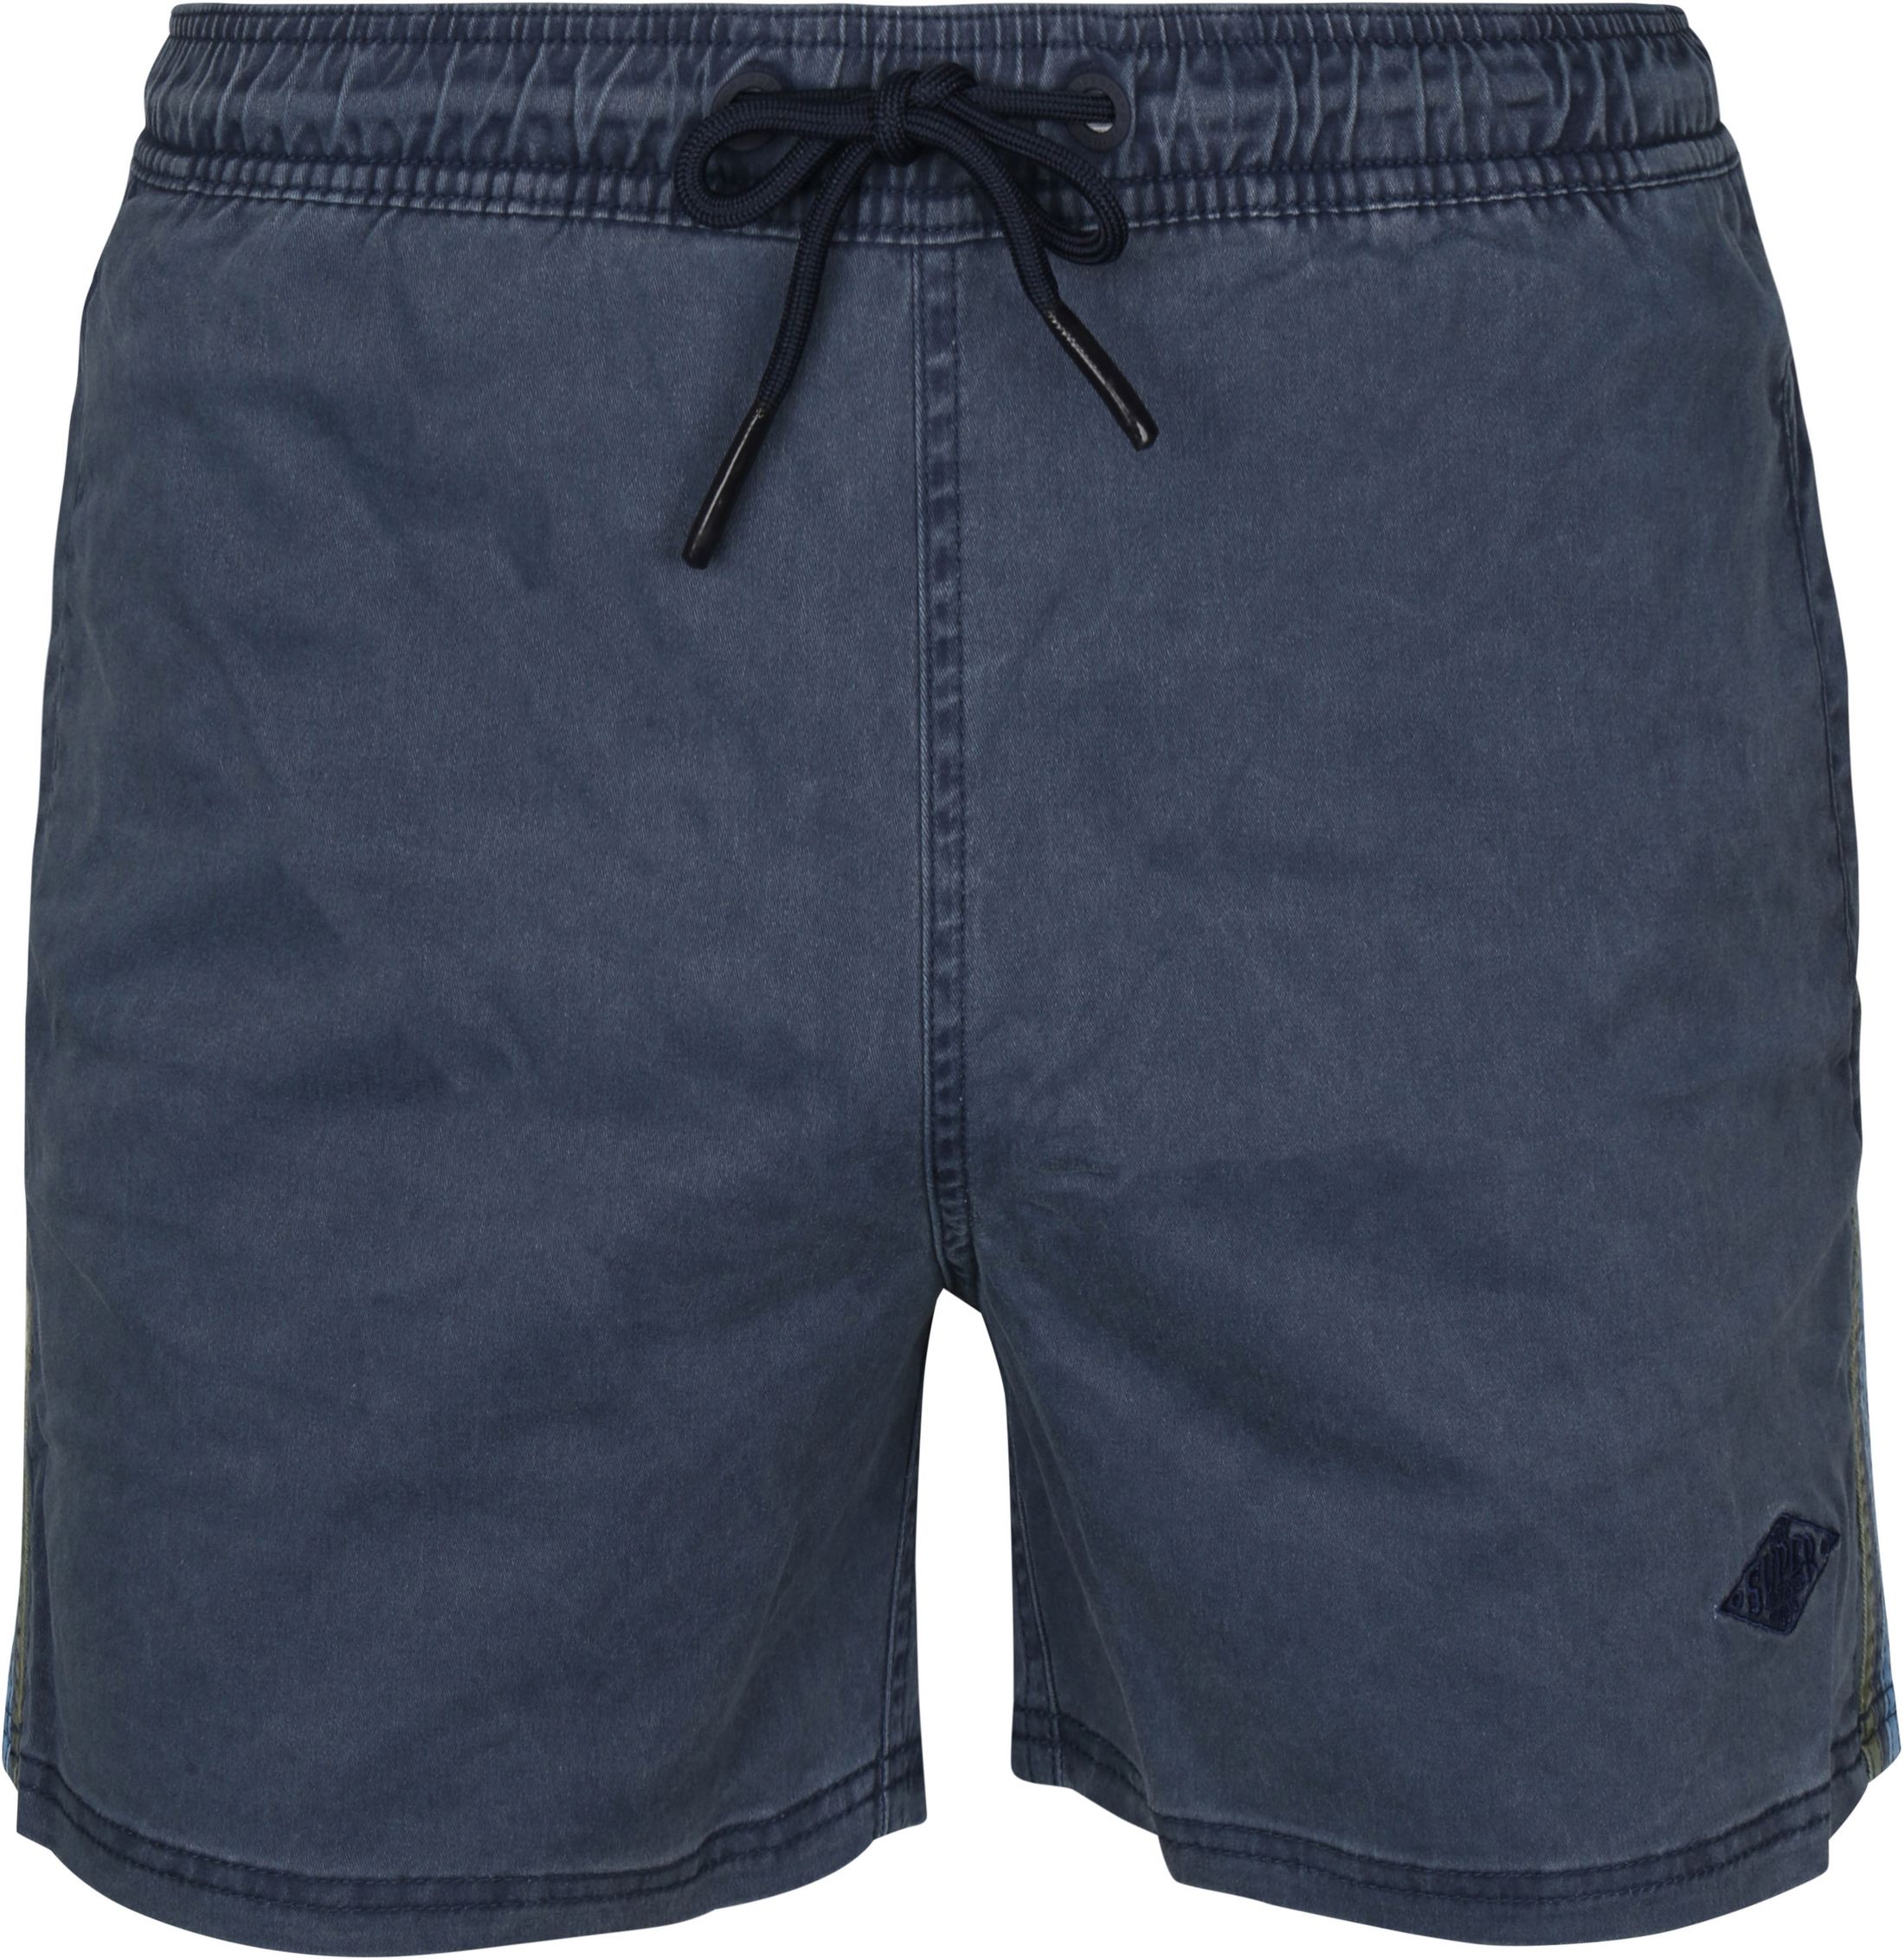 Superdry Vintage Stripe Shorts Foncé Bleu foncé Bleu taille L